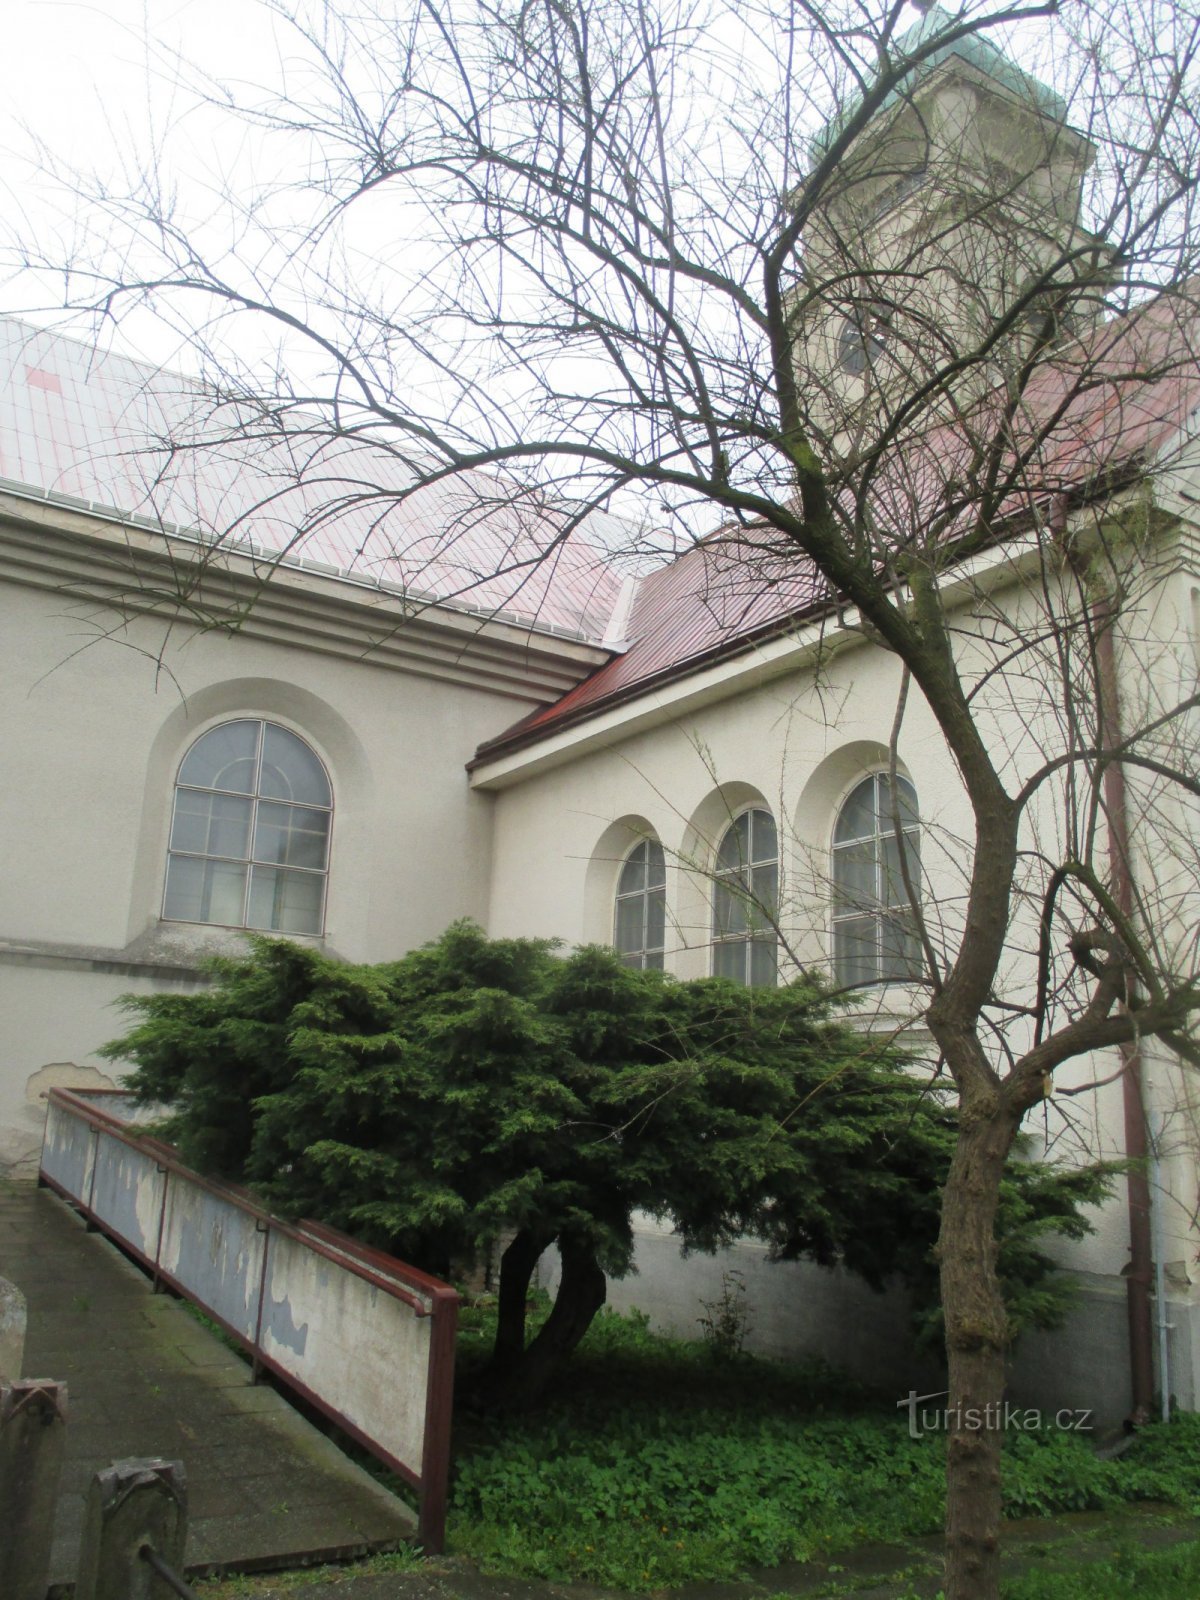 Iglesia del Jubileo del Maestro Jan Hus en Pečky